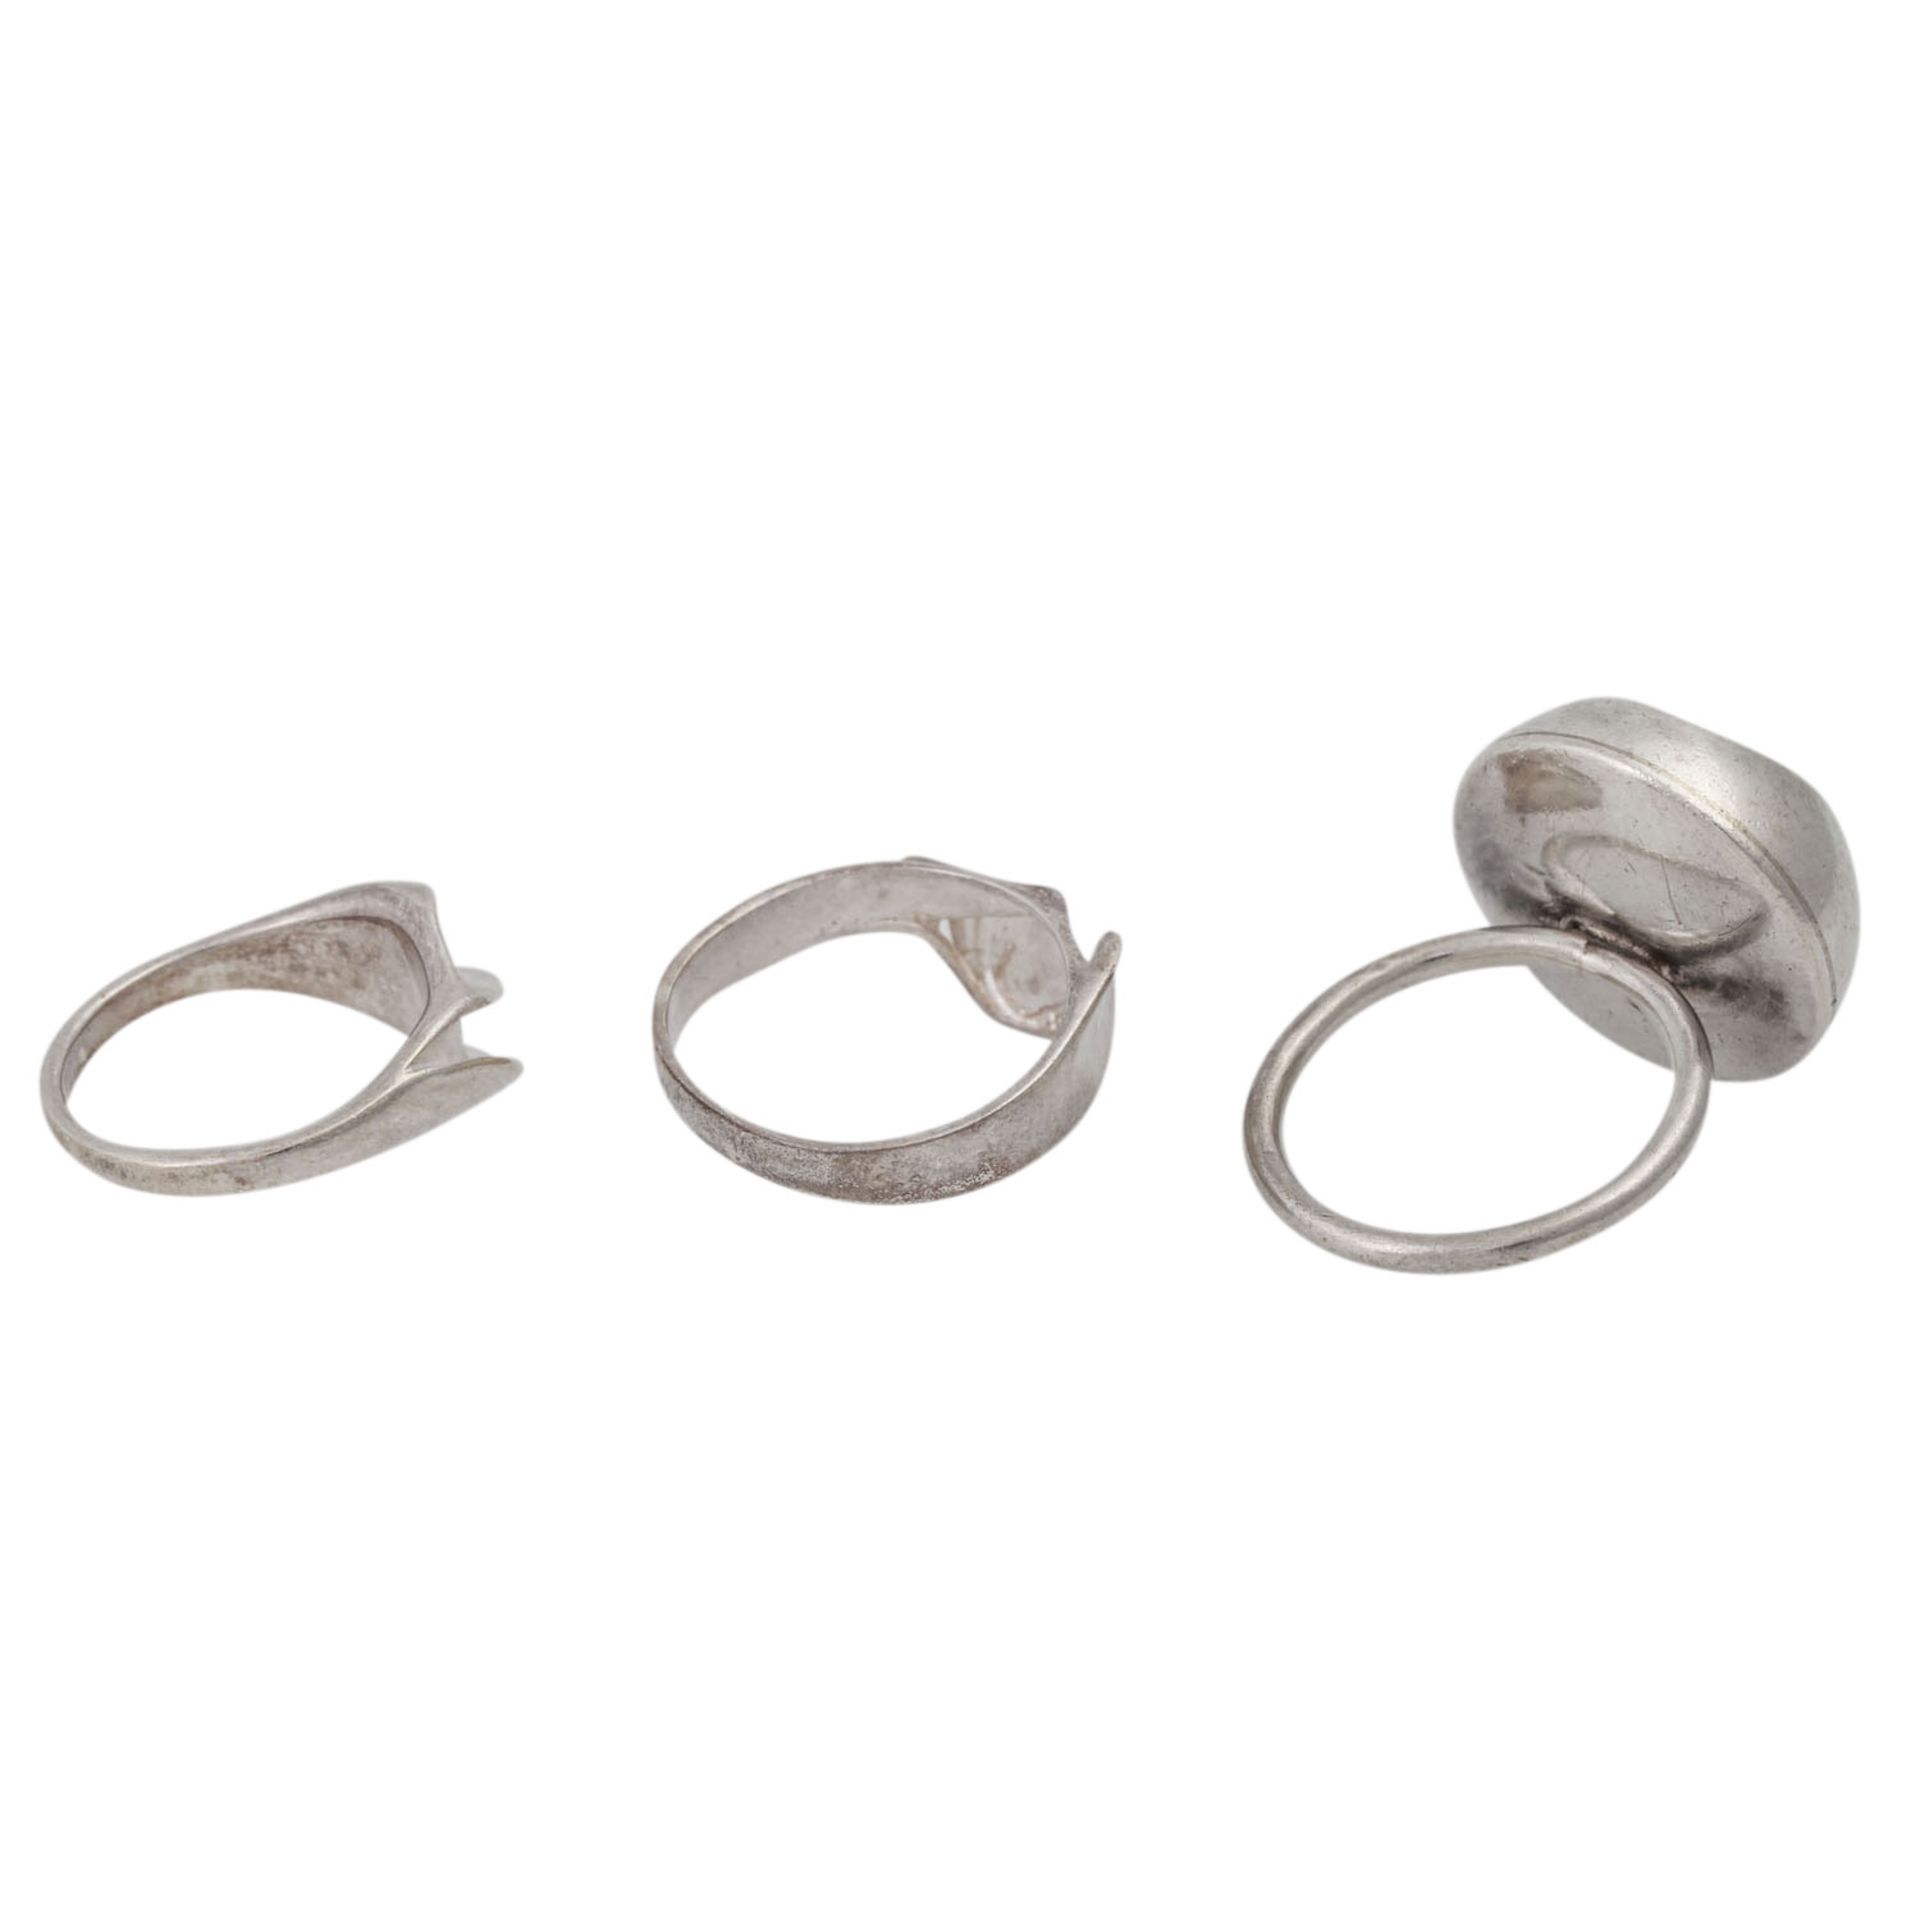 Schmuckkonvolut 7-teilig,Silber, 149 g, bestehend aus 1 Armband, 1 Collier, 3 Ringen, - Image 7 of 7